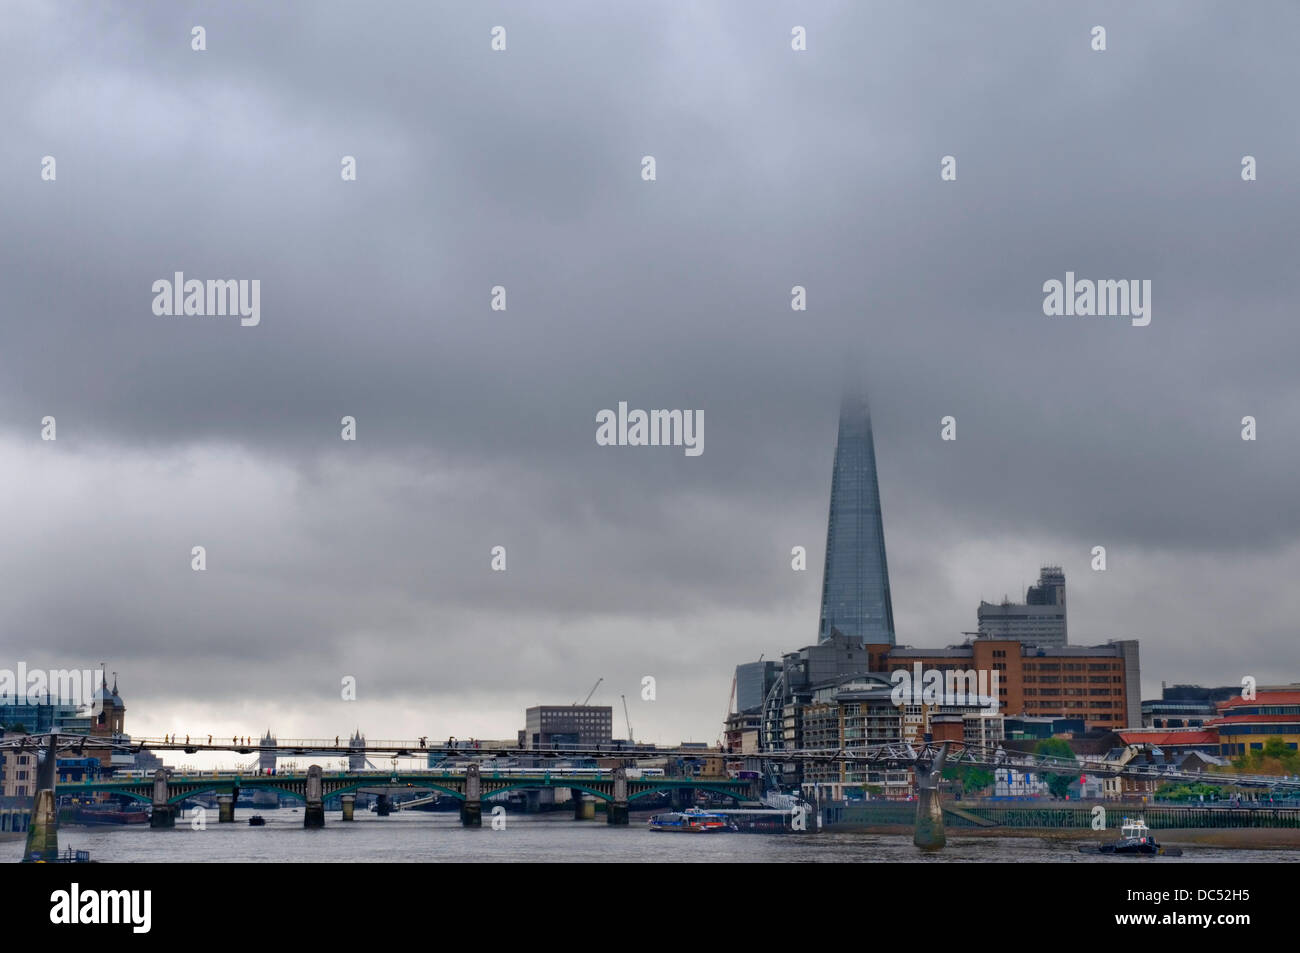 London, UK. 9. August 2013. Regen Wolken hängen schwer über Londons höchstes Gebäude als die UK dürfte sich den Regen nach Wochen von heißem Wetter begrüßen zu dürfen. Bildnachweis: Paul Swinney/Alamy Live-Nachrichten Stockfoto